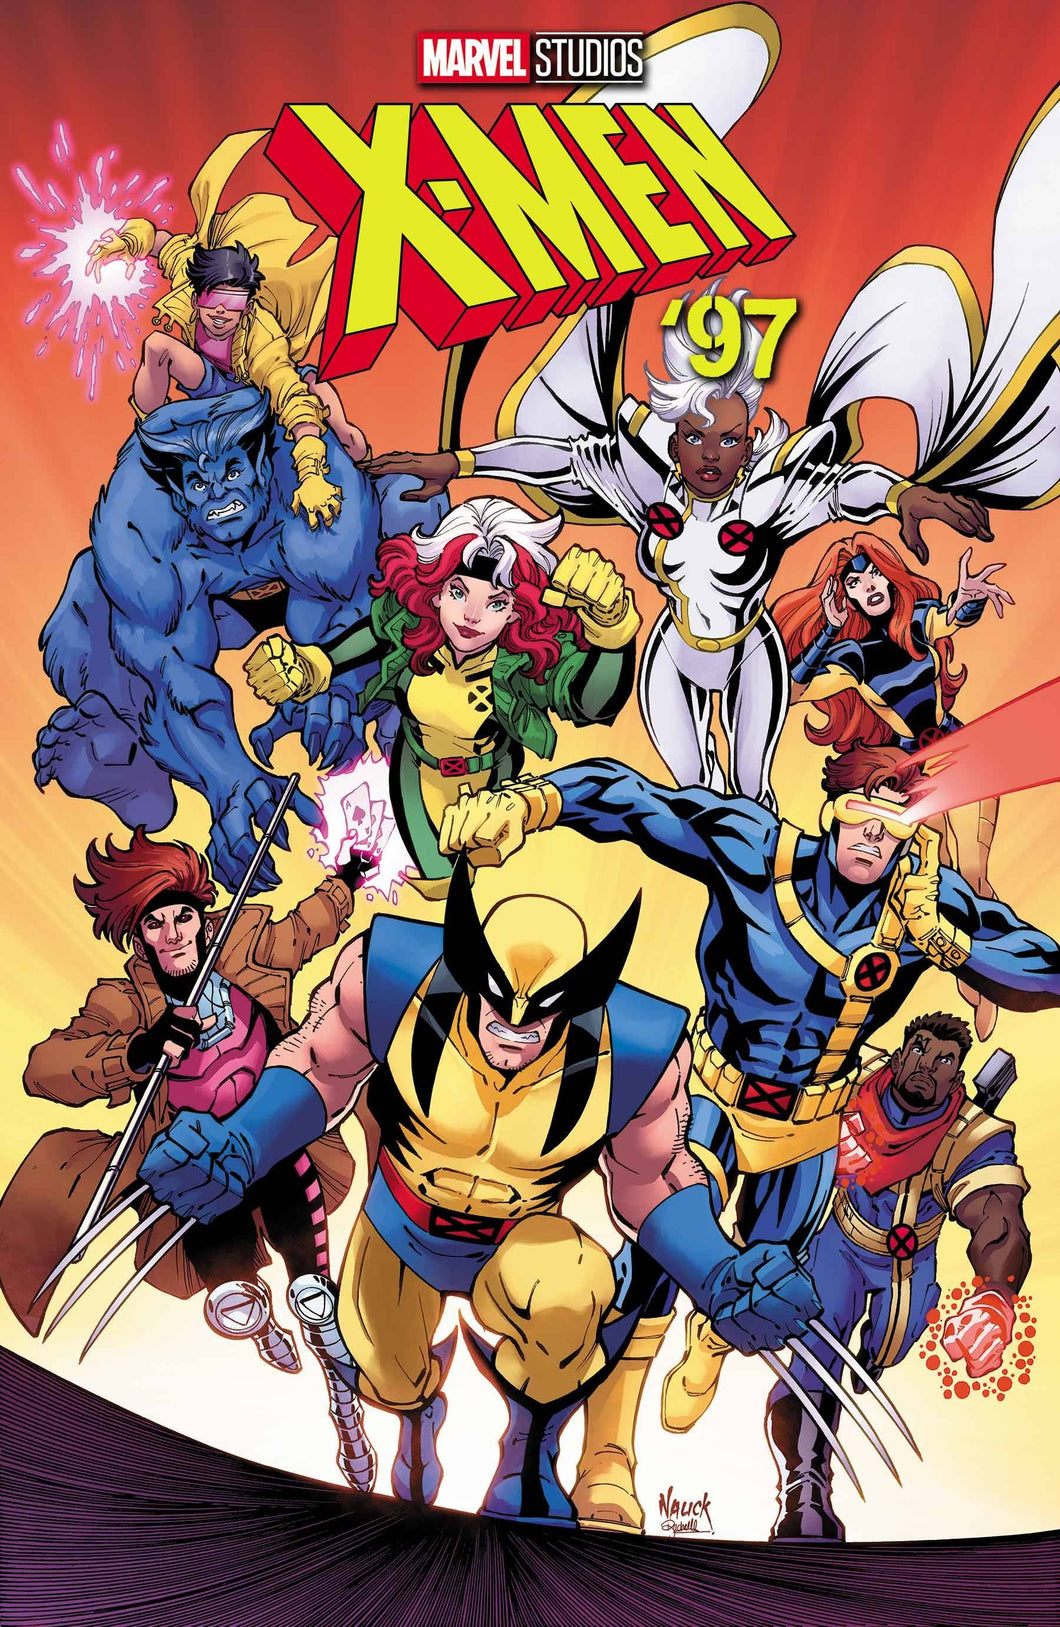 X-Men 97 #1 Main Cover